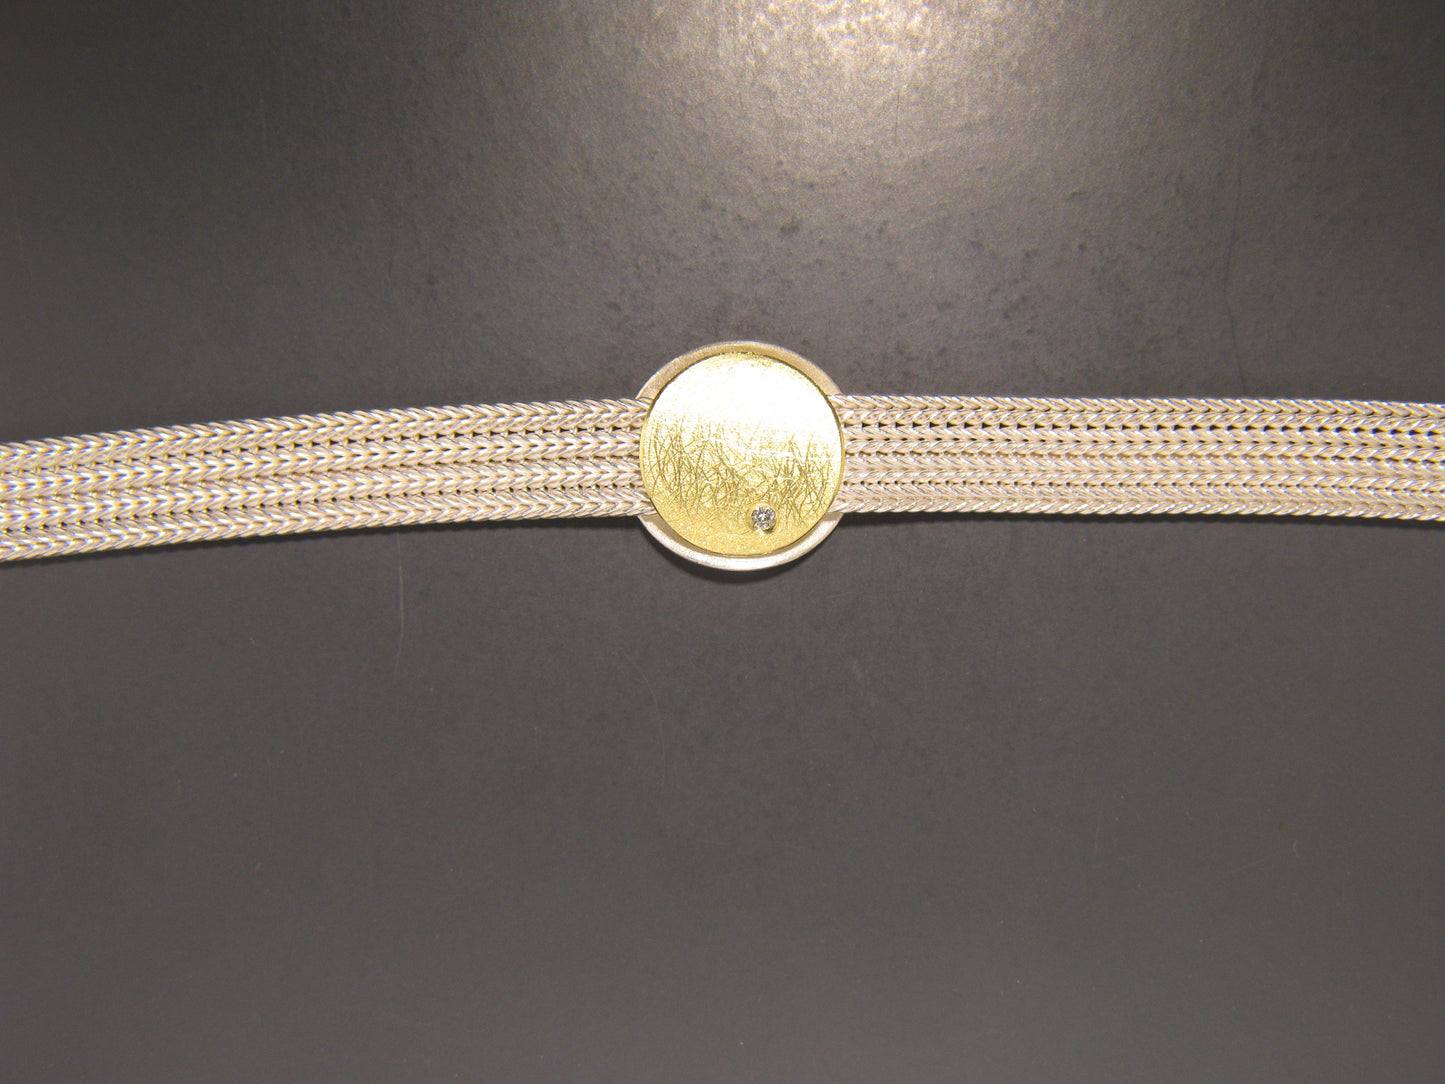 Silber-Armband mit Goldapplikation und Brillantbesatz | MANU